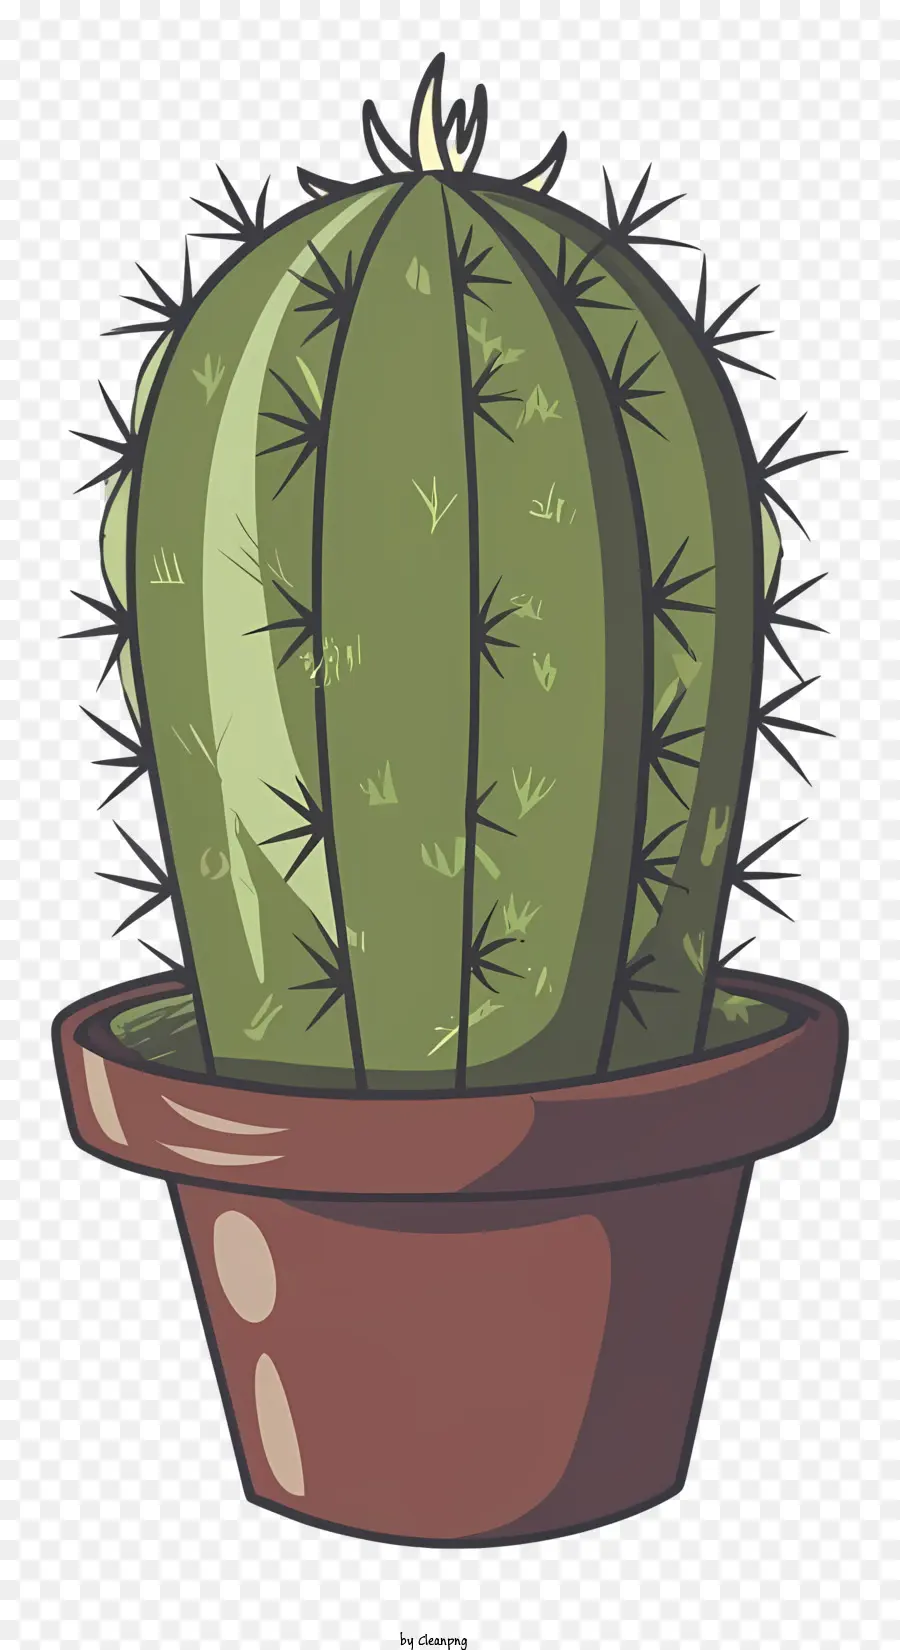 Aghi pintosi della pianta di cactus cartoni animati piccole foglie verdi - Cactus ben mantenuto e fiorente nella pentola di argilla